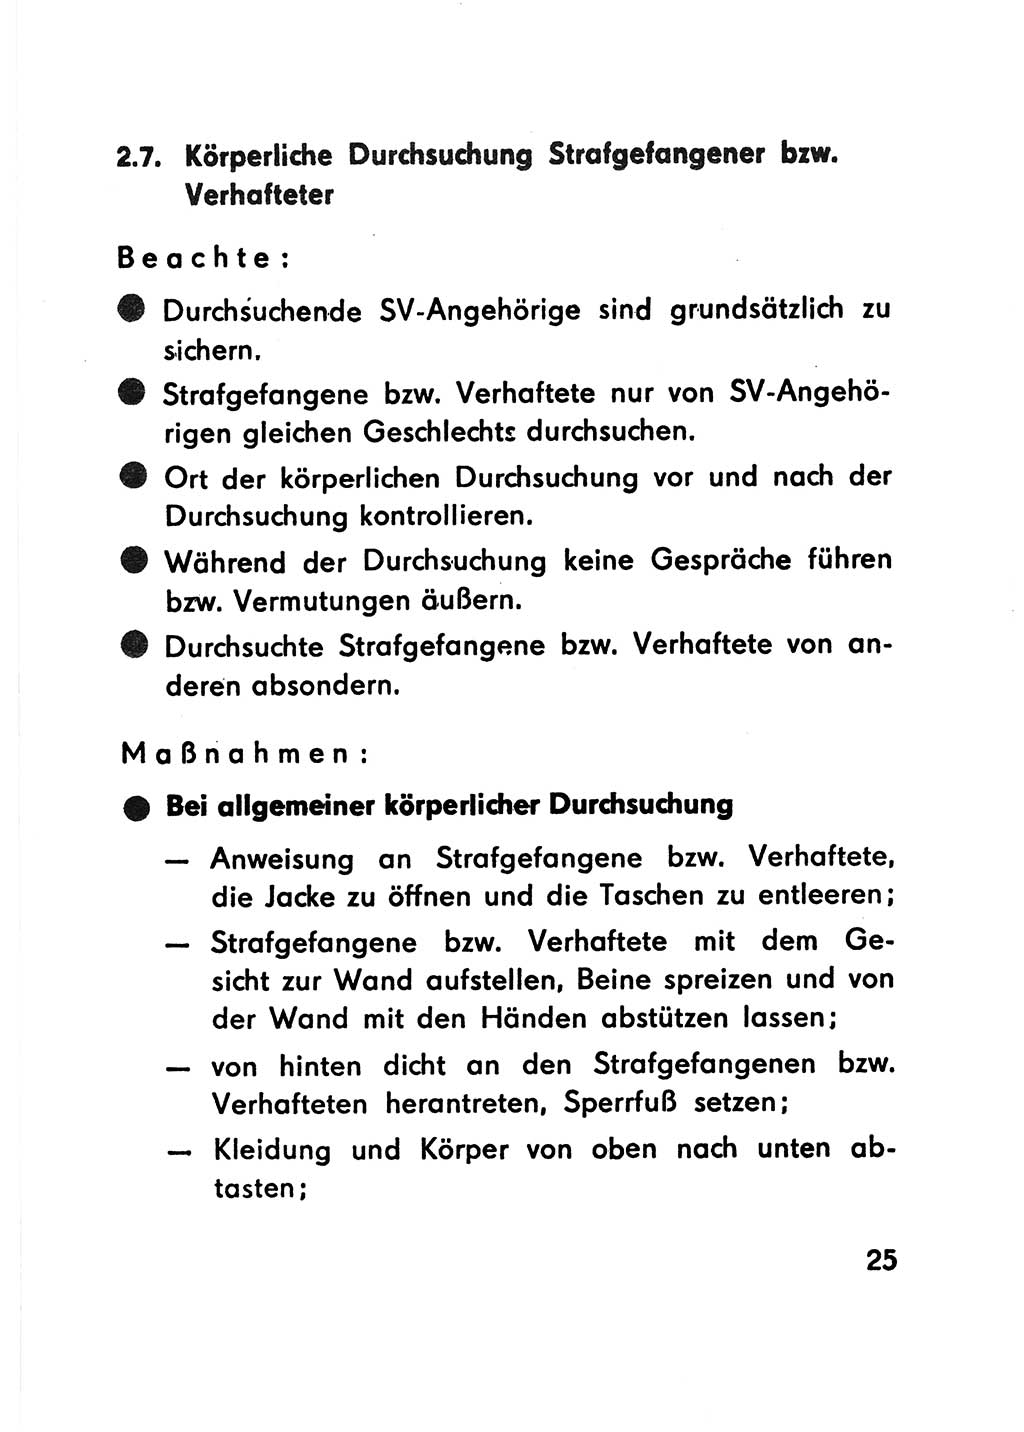 Merkbuch für SV-Angehörige [Strafvollzug (SV) Deutsche Demokratische Republik (DDR)] 1975, Seite 25 (SV-Angeh. DDR 1975, S. 25)